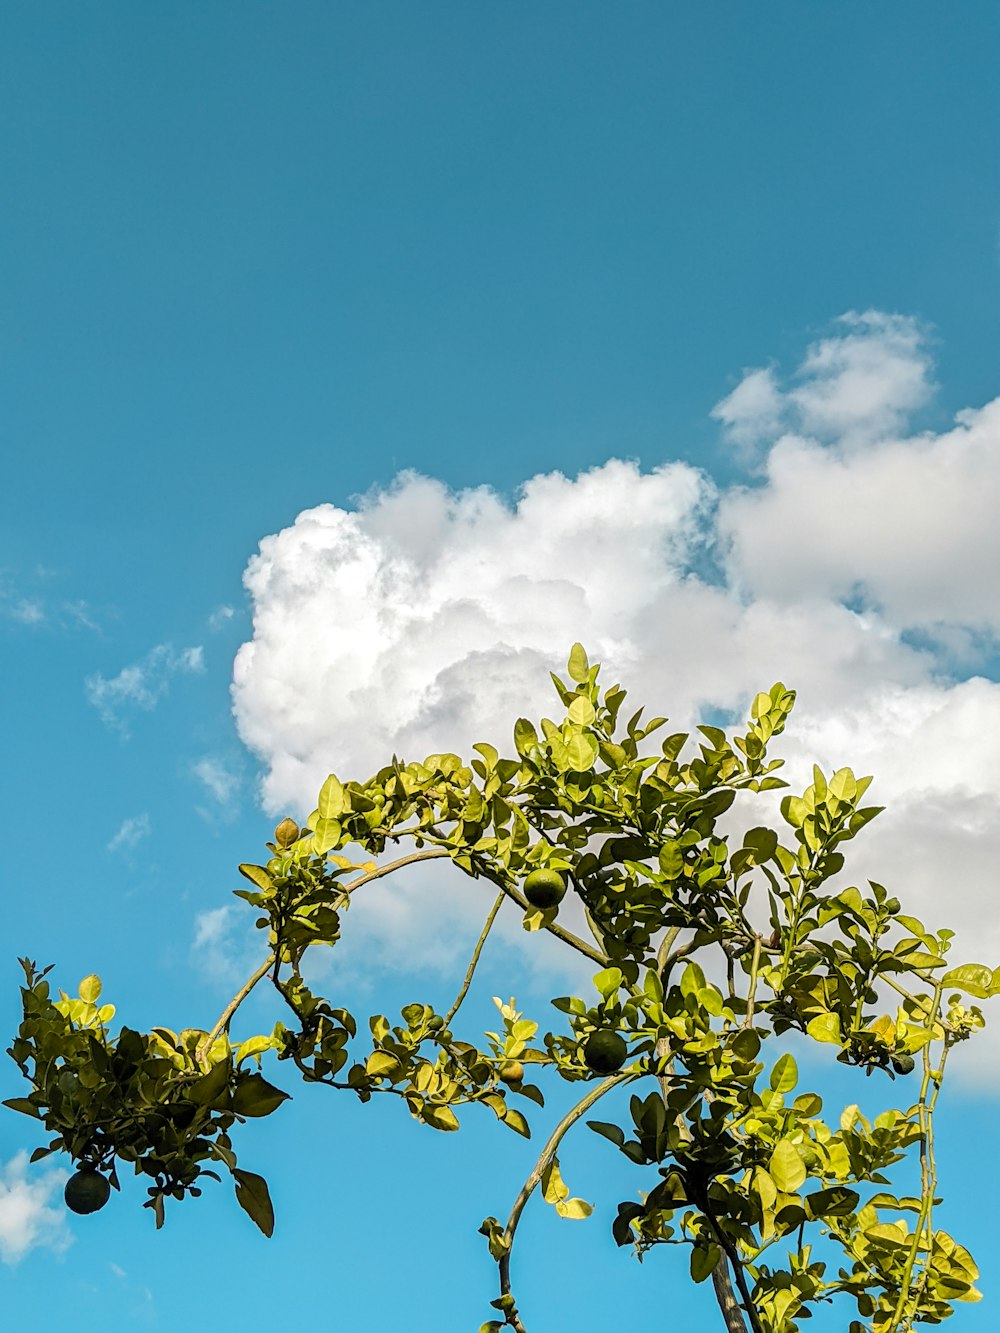 arbre à feuilles vertes sous ciel nuageux ensoleillé bleu et blanc pendant la journée